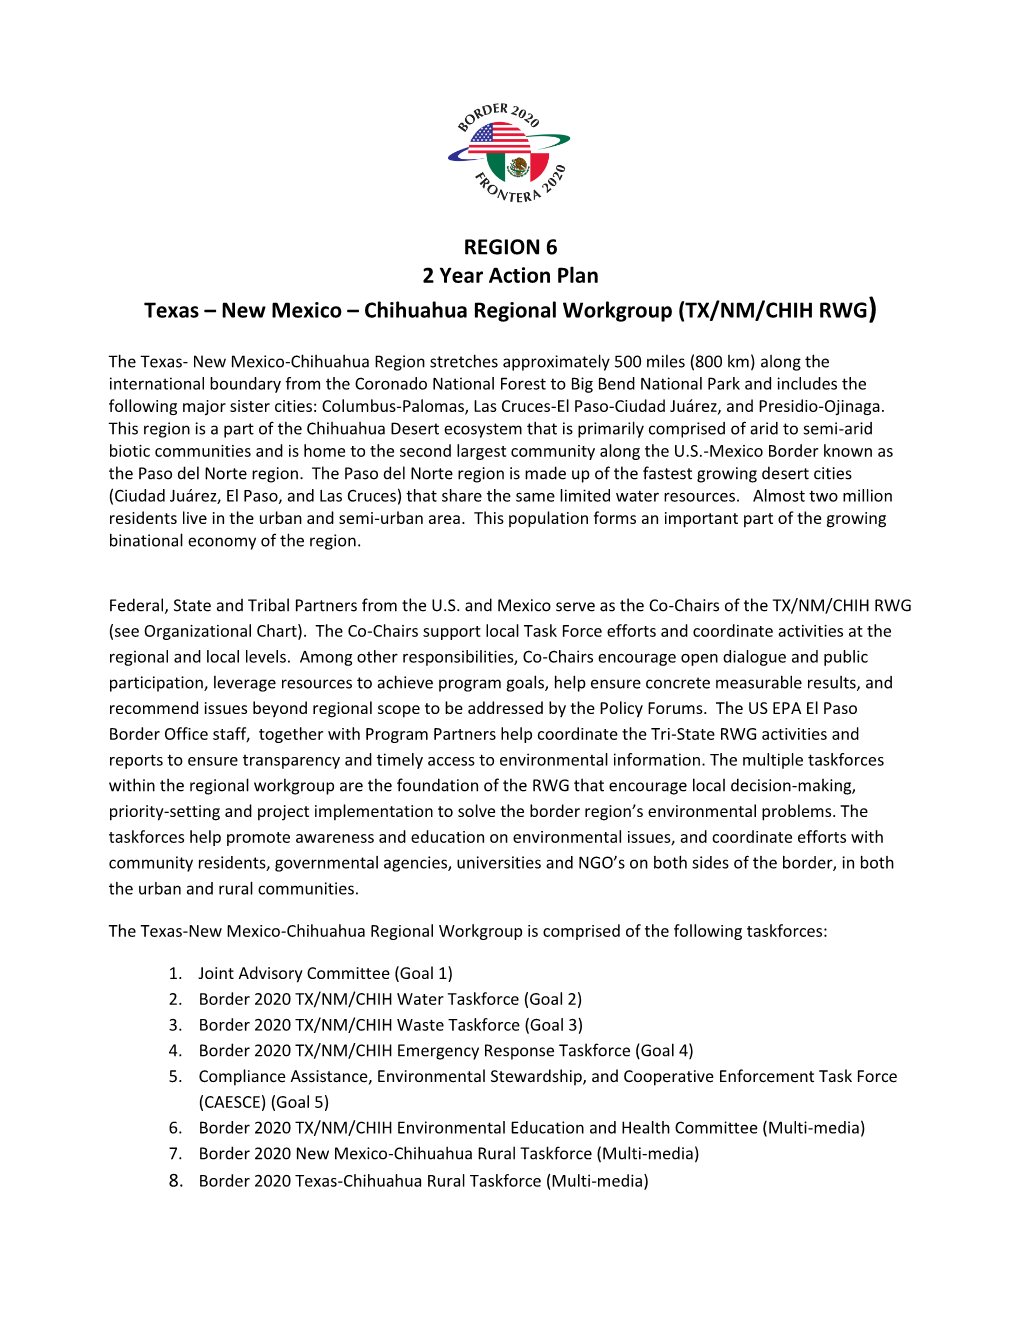 2-Year Workplan Texas-New Mexico-Chihuahua Regional